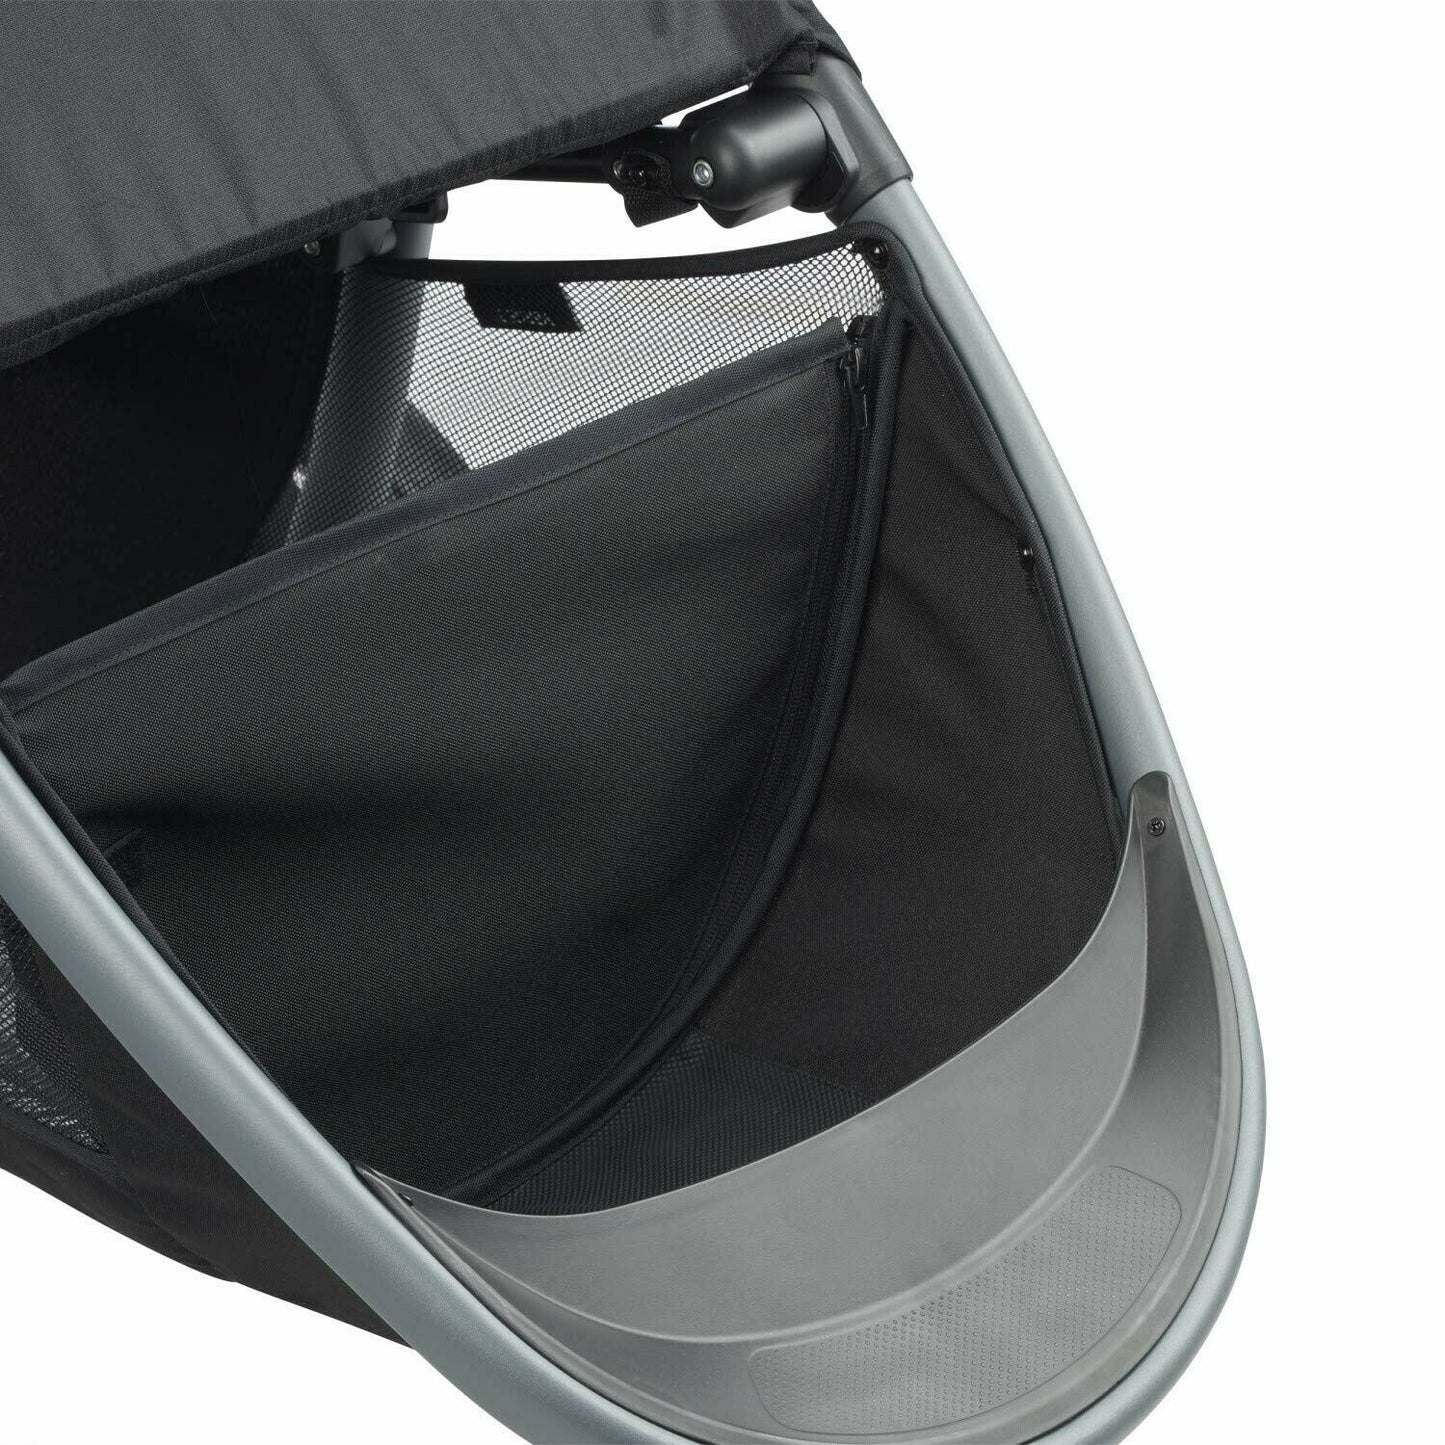 Evenflo Baby Stroller Gold SensorSafe Verge3 Smart with Car Seat Travel System